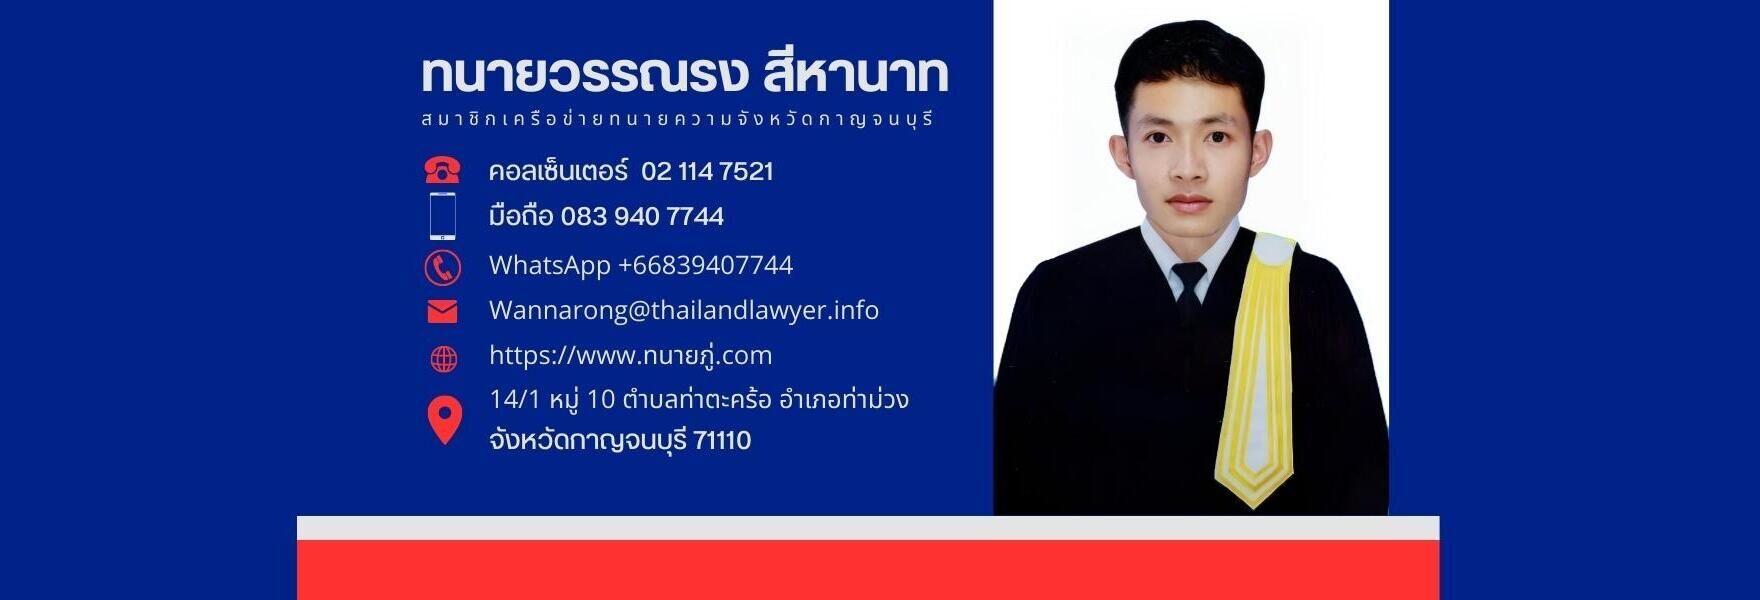 ทนายความจังหวัดกาญจนบุรี